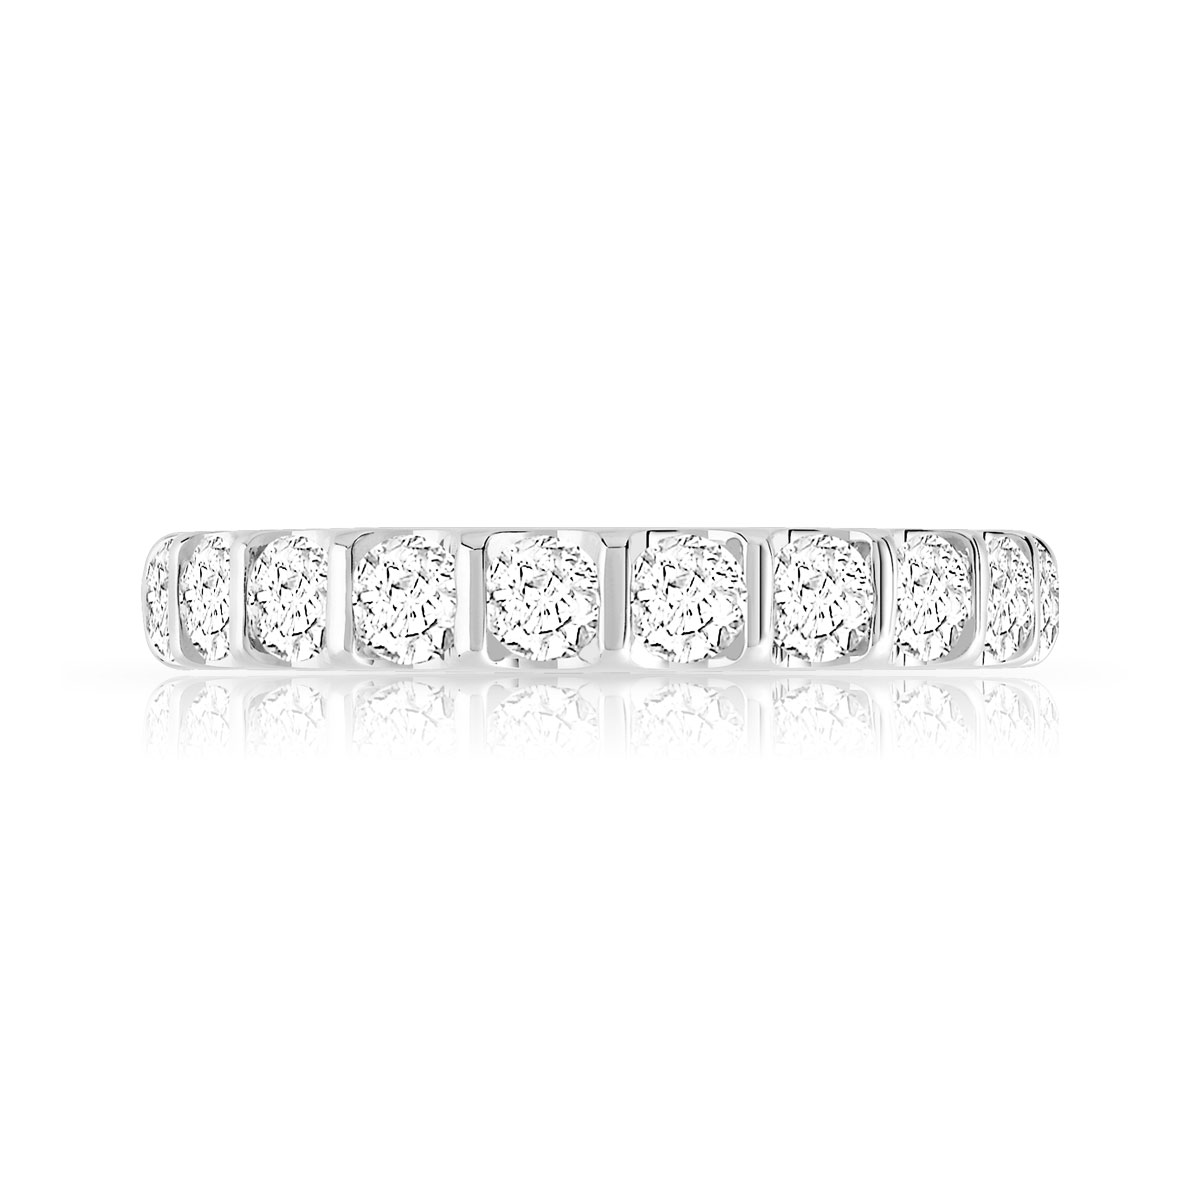 Alliance demi-T or 750 blanc diamants synthétiques 1 carat - vue 3